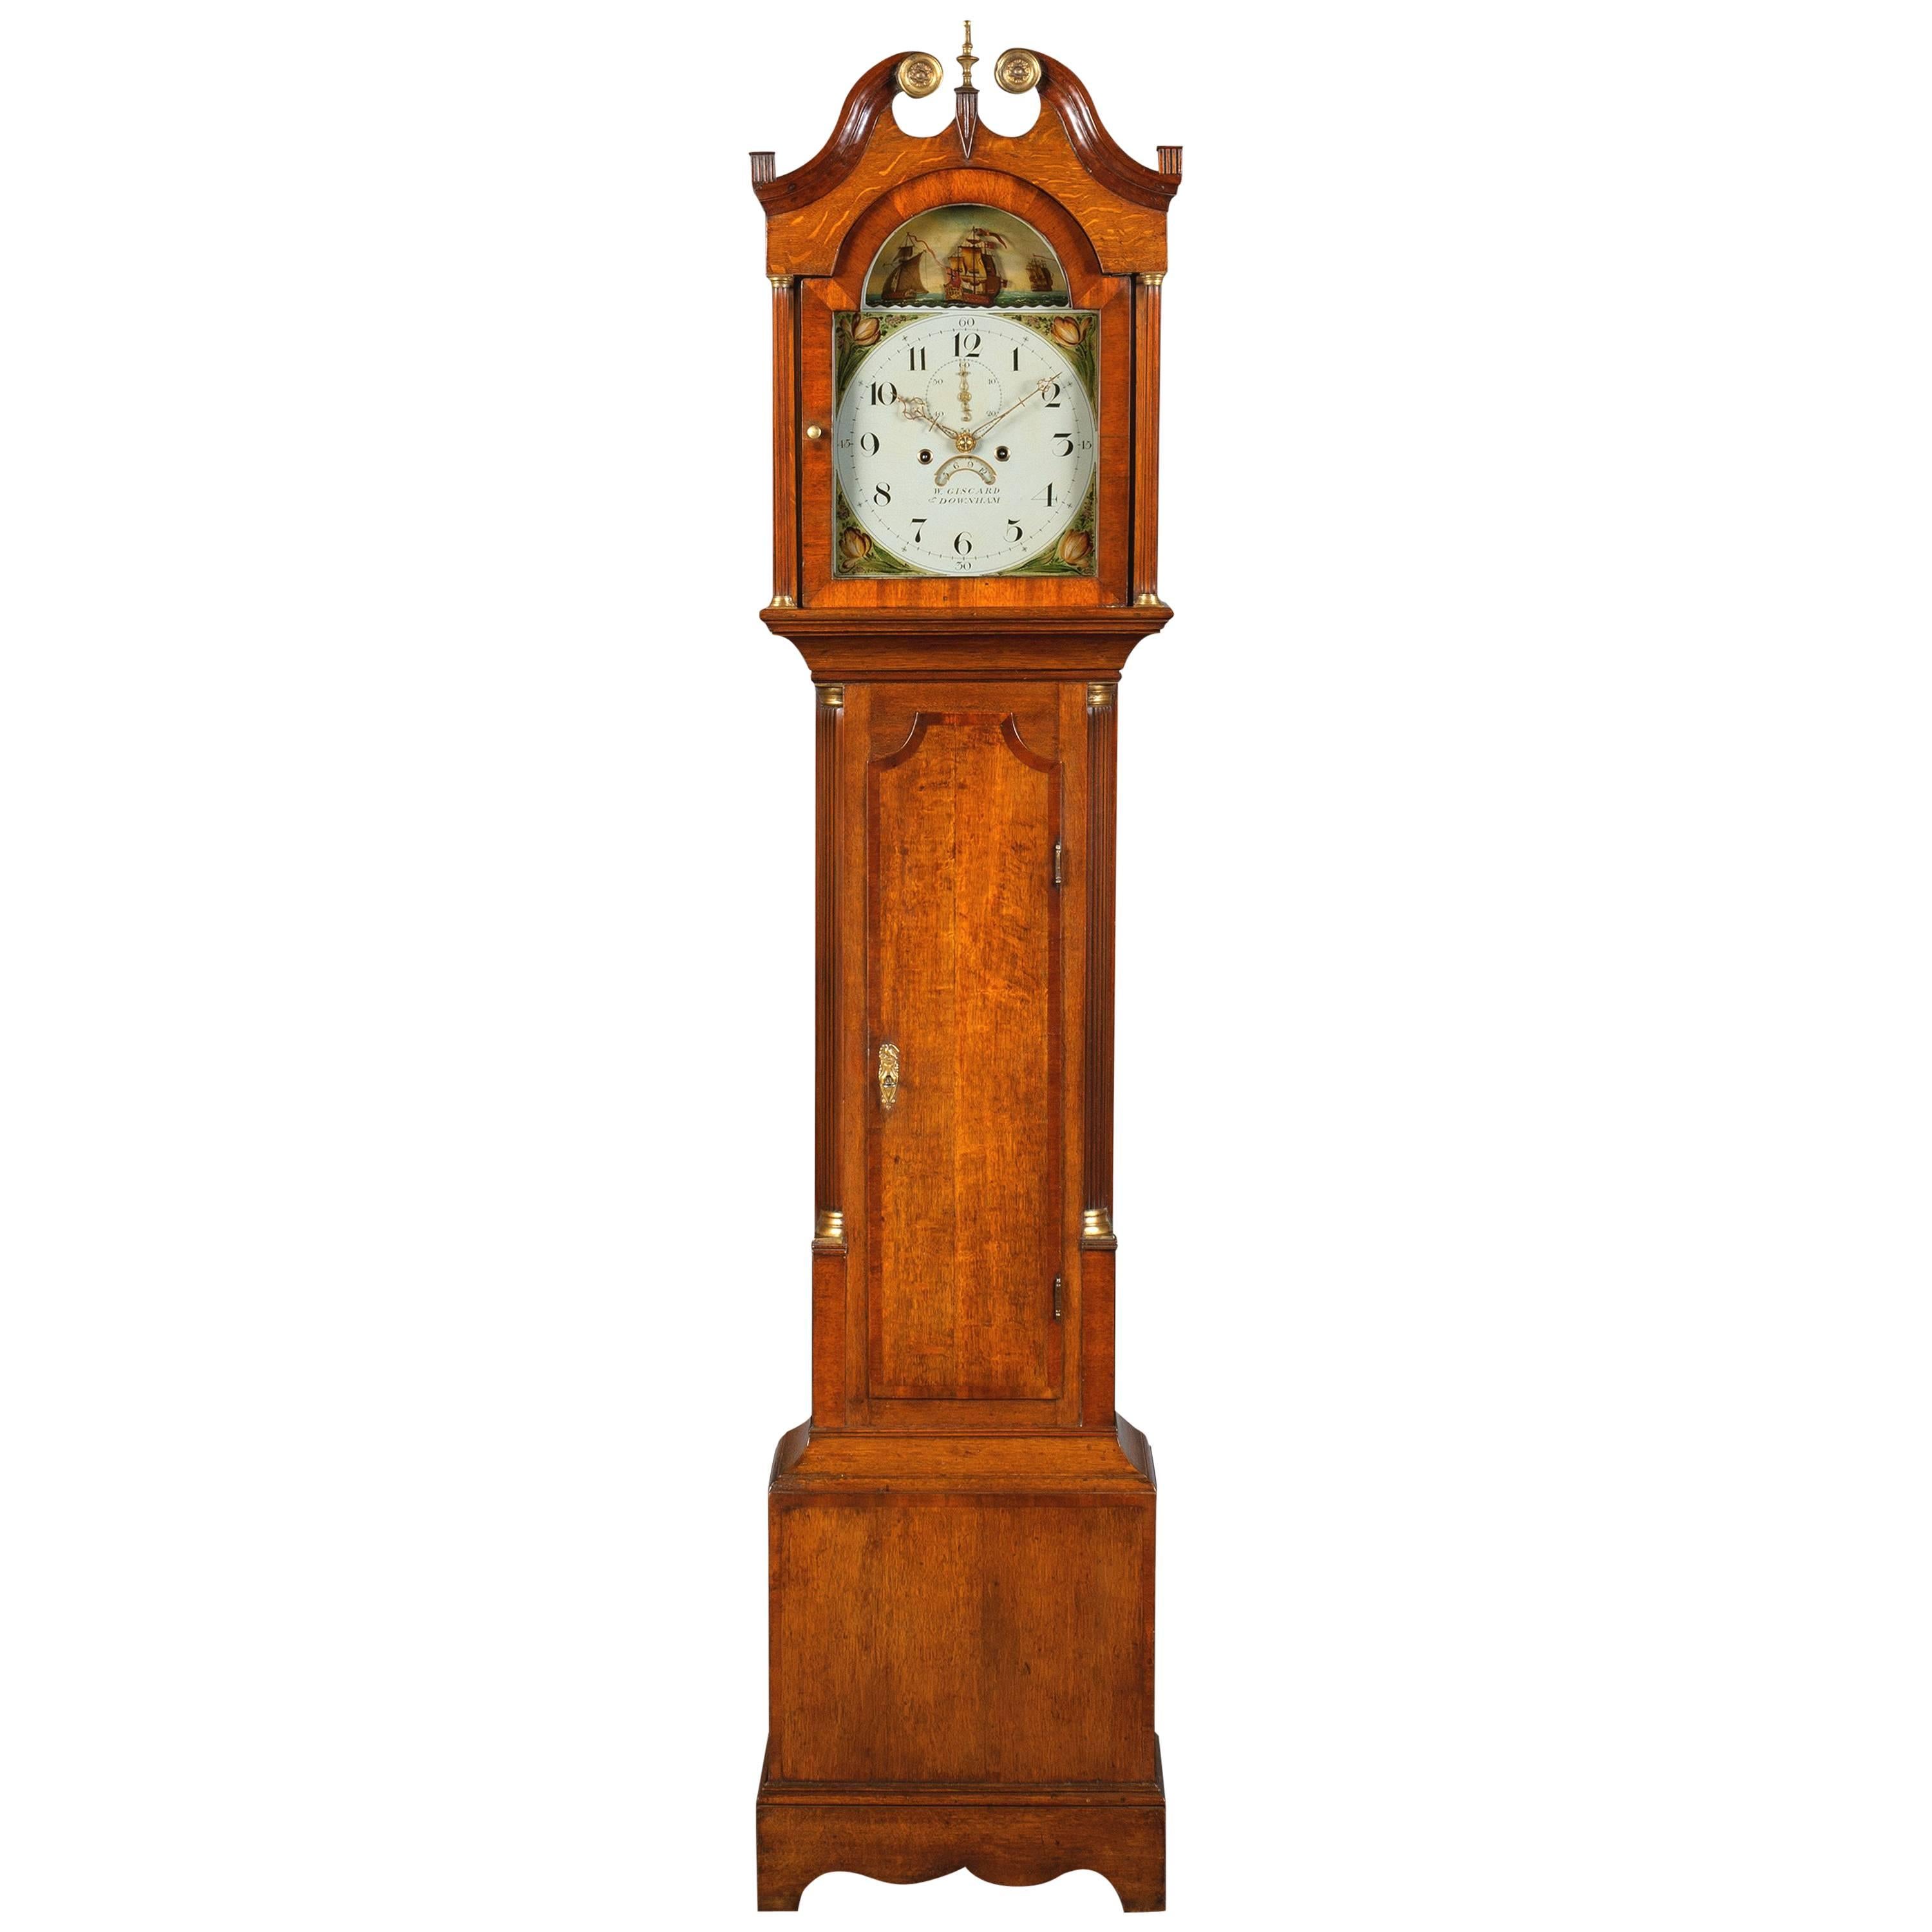 English Regency Oak and Mahogany Longcase Clock by W.Giscard, Downham